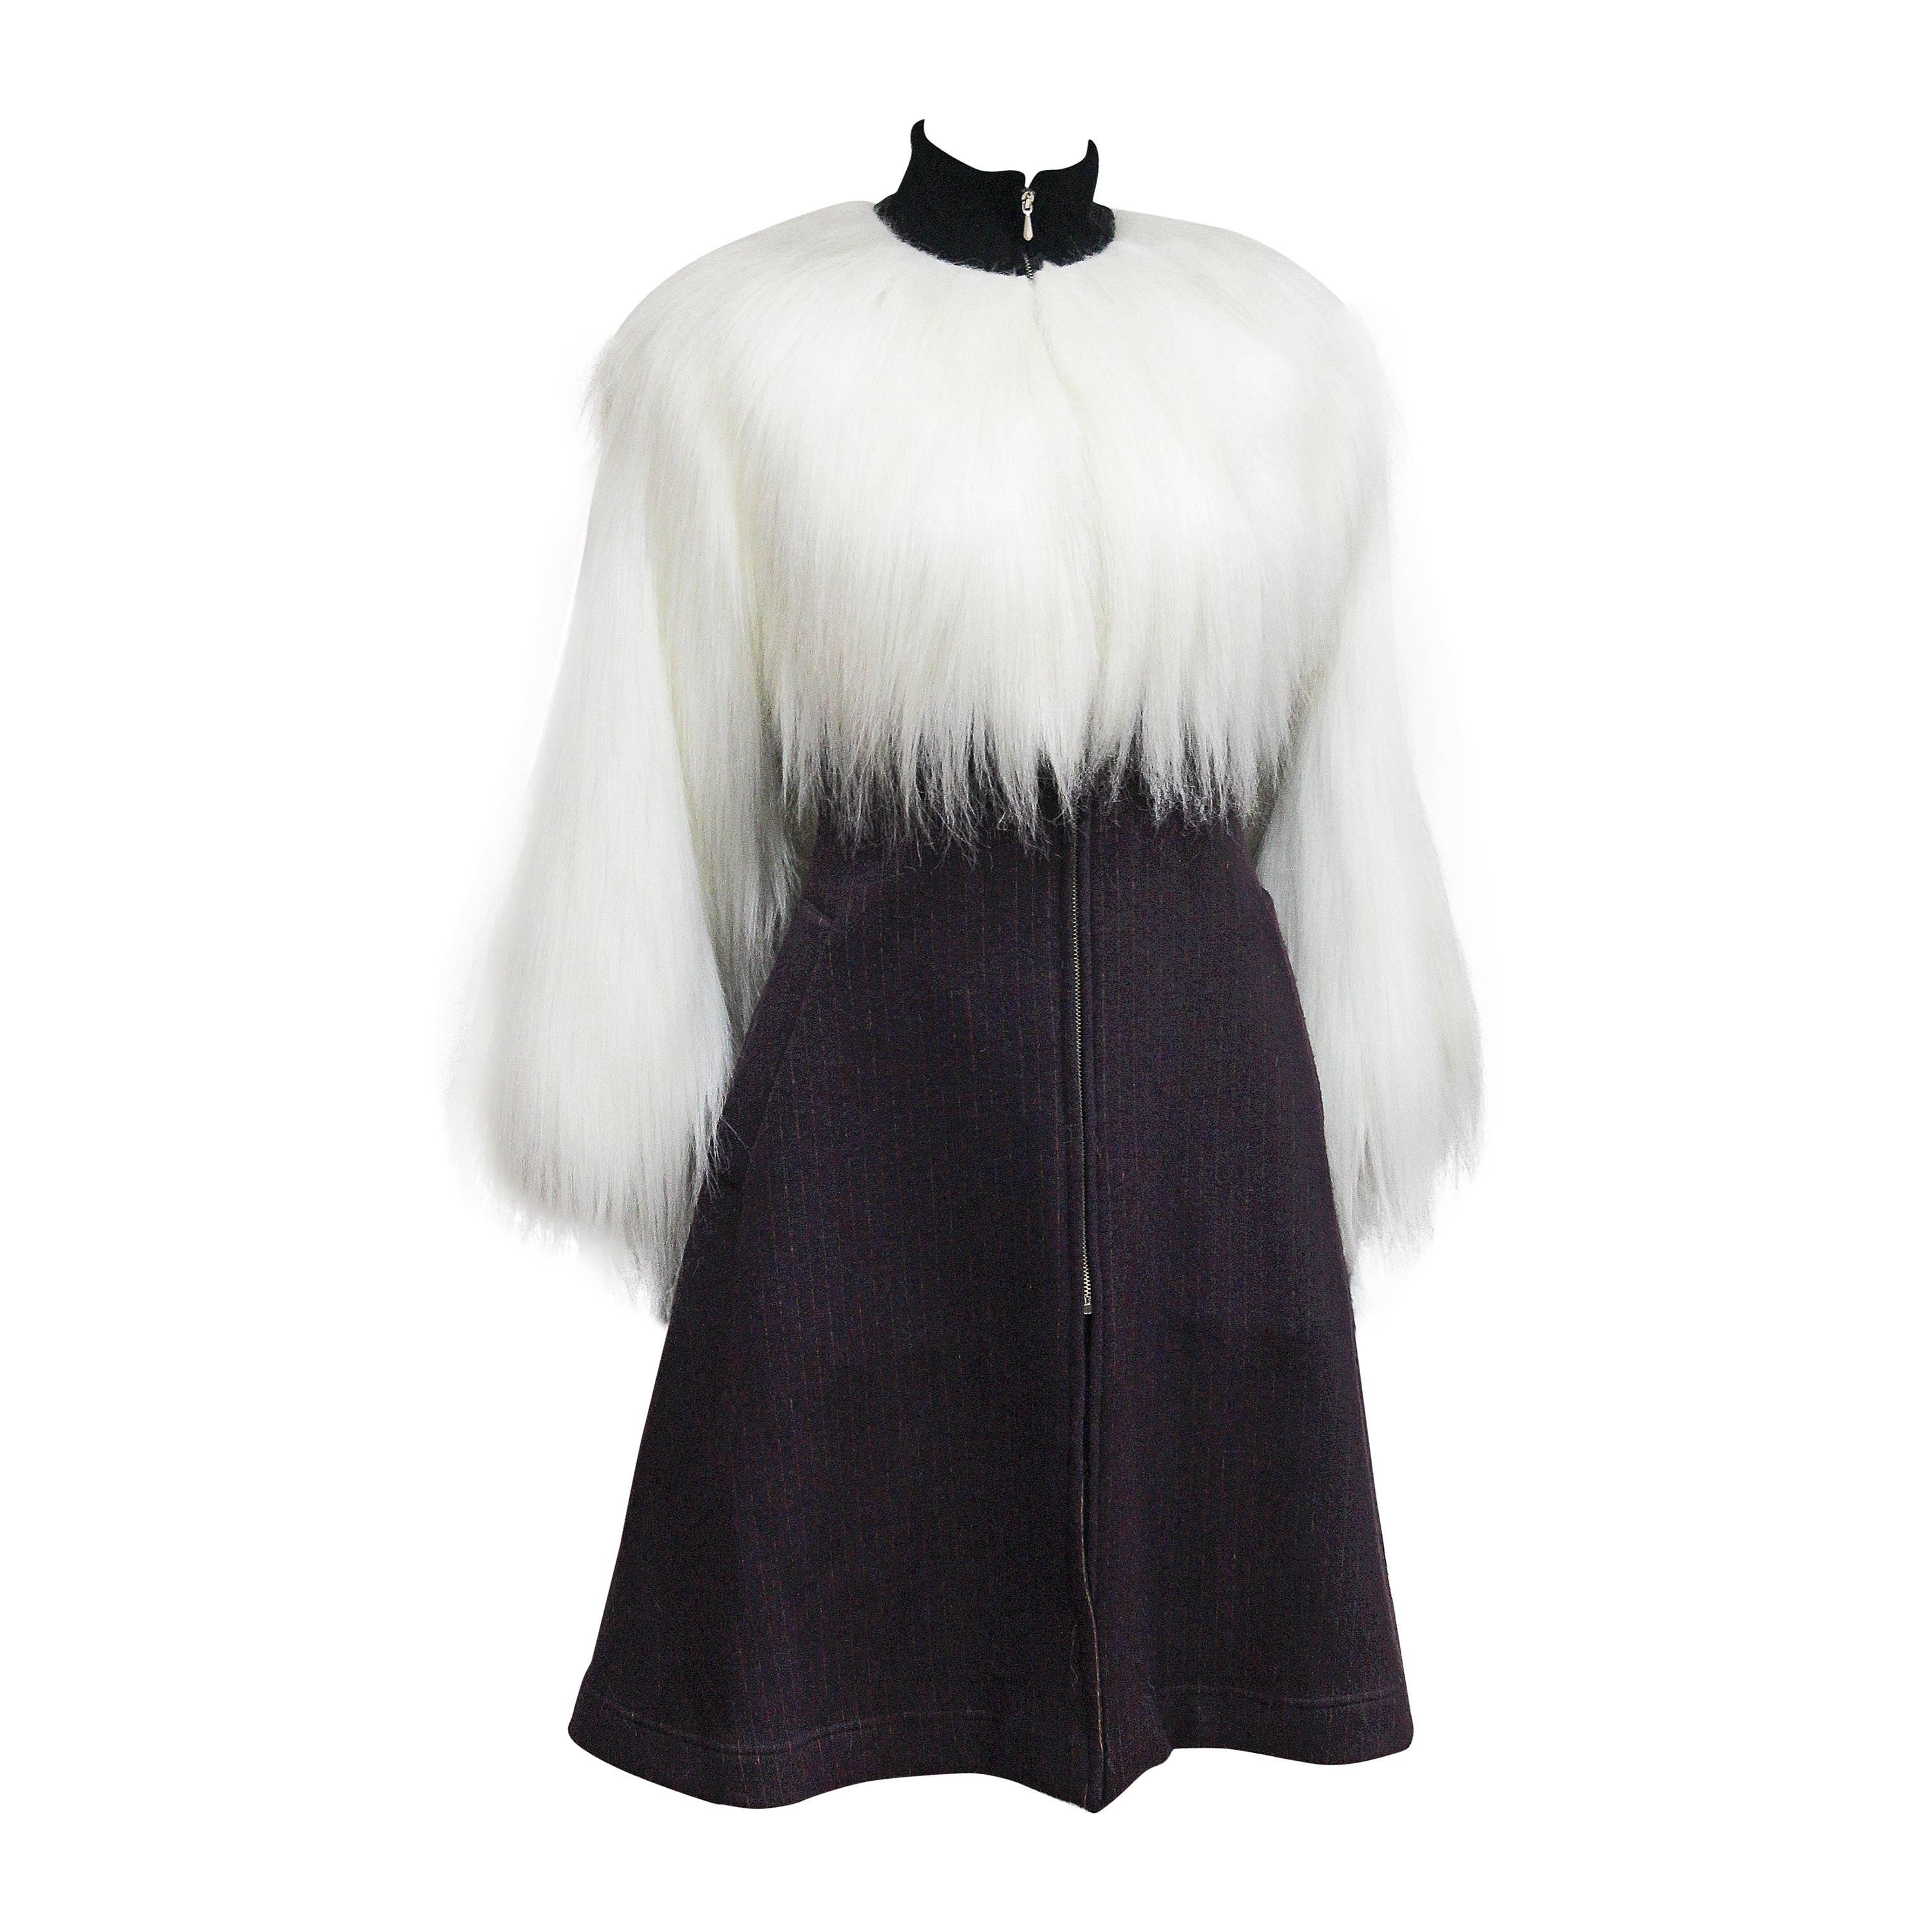 Jean Paul Gaultier Pin Stripe Fur Dress, c. 1993